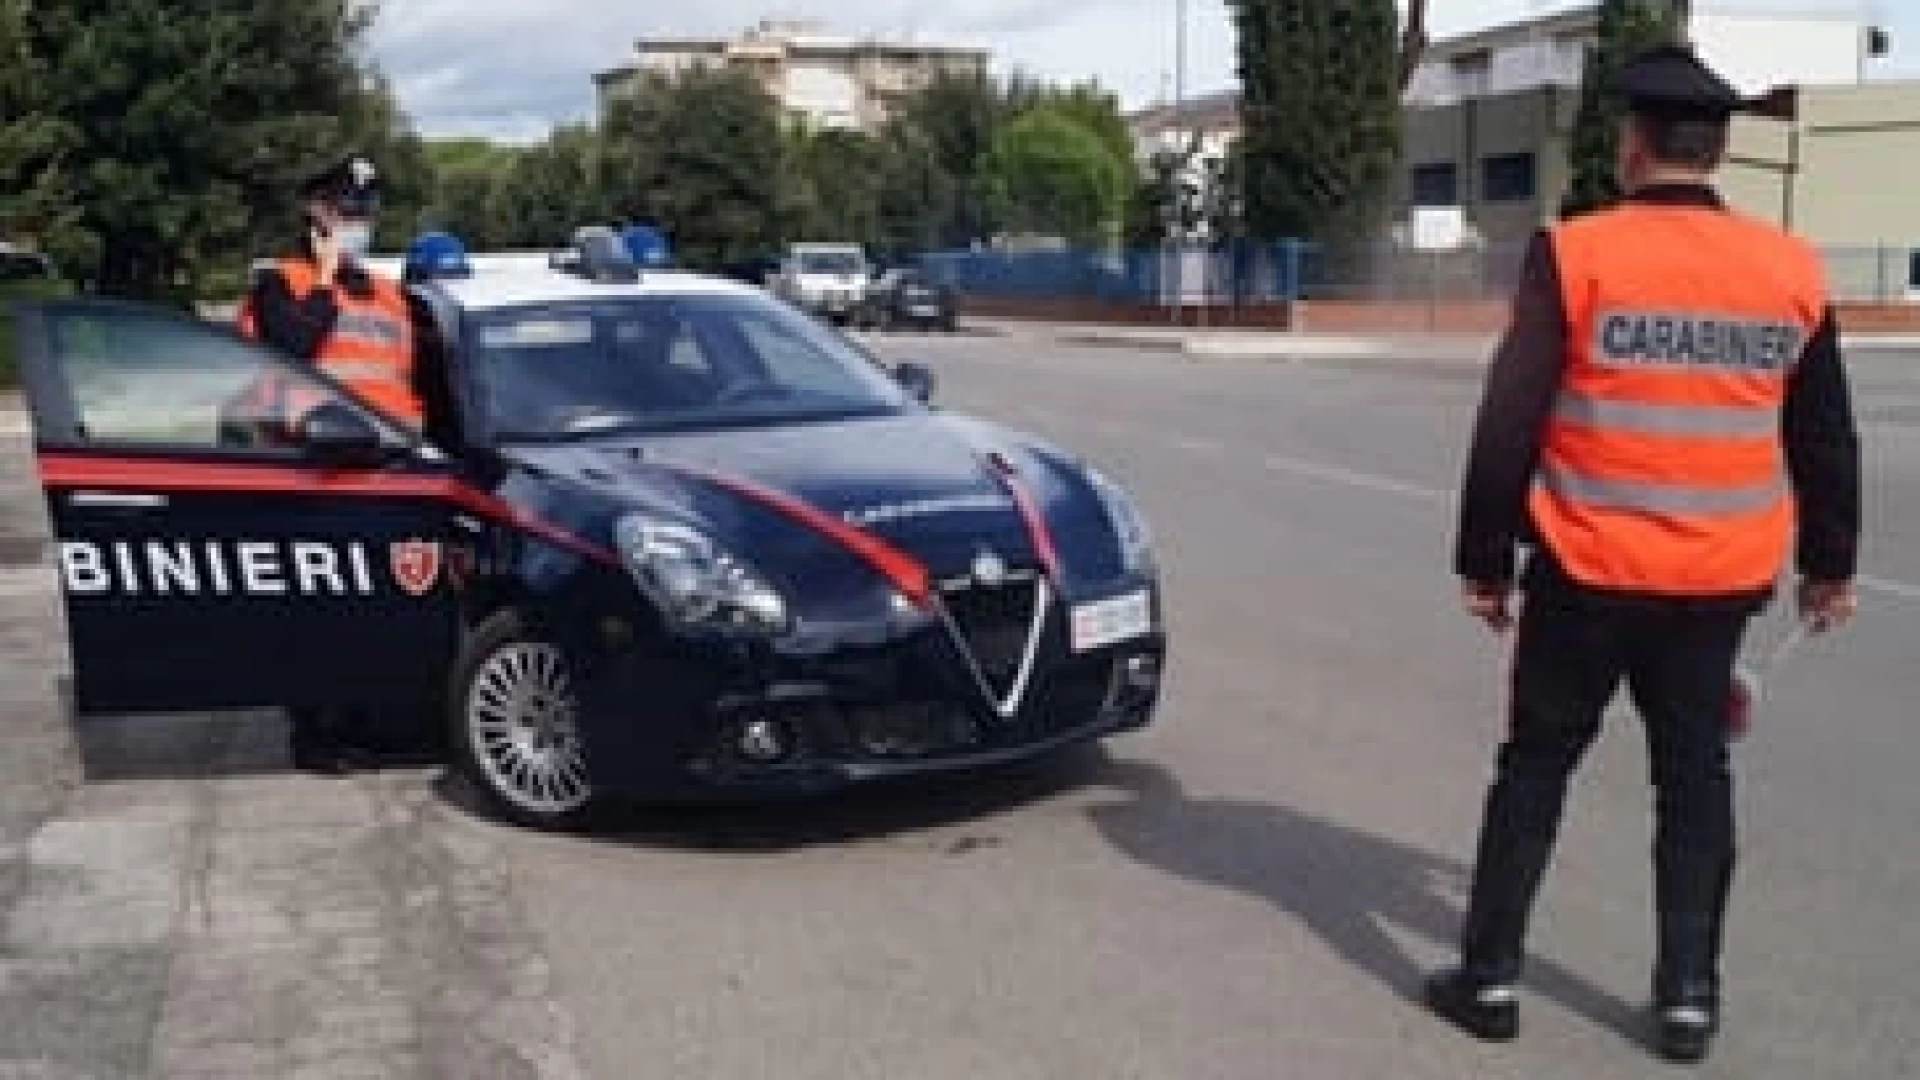 Rionero Sannitico: 21enne abruzzese beccato dai Carabinieri con sostanze stupefacenti